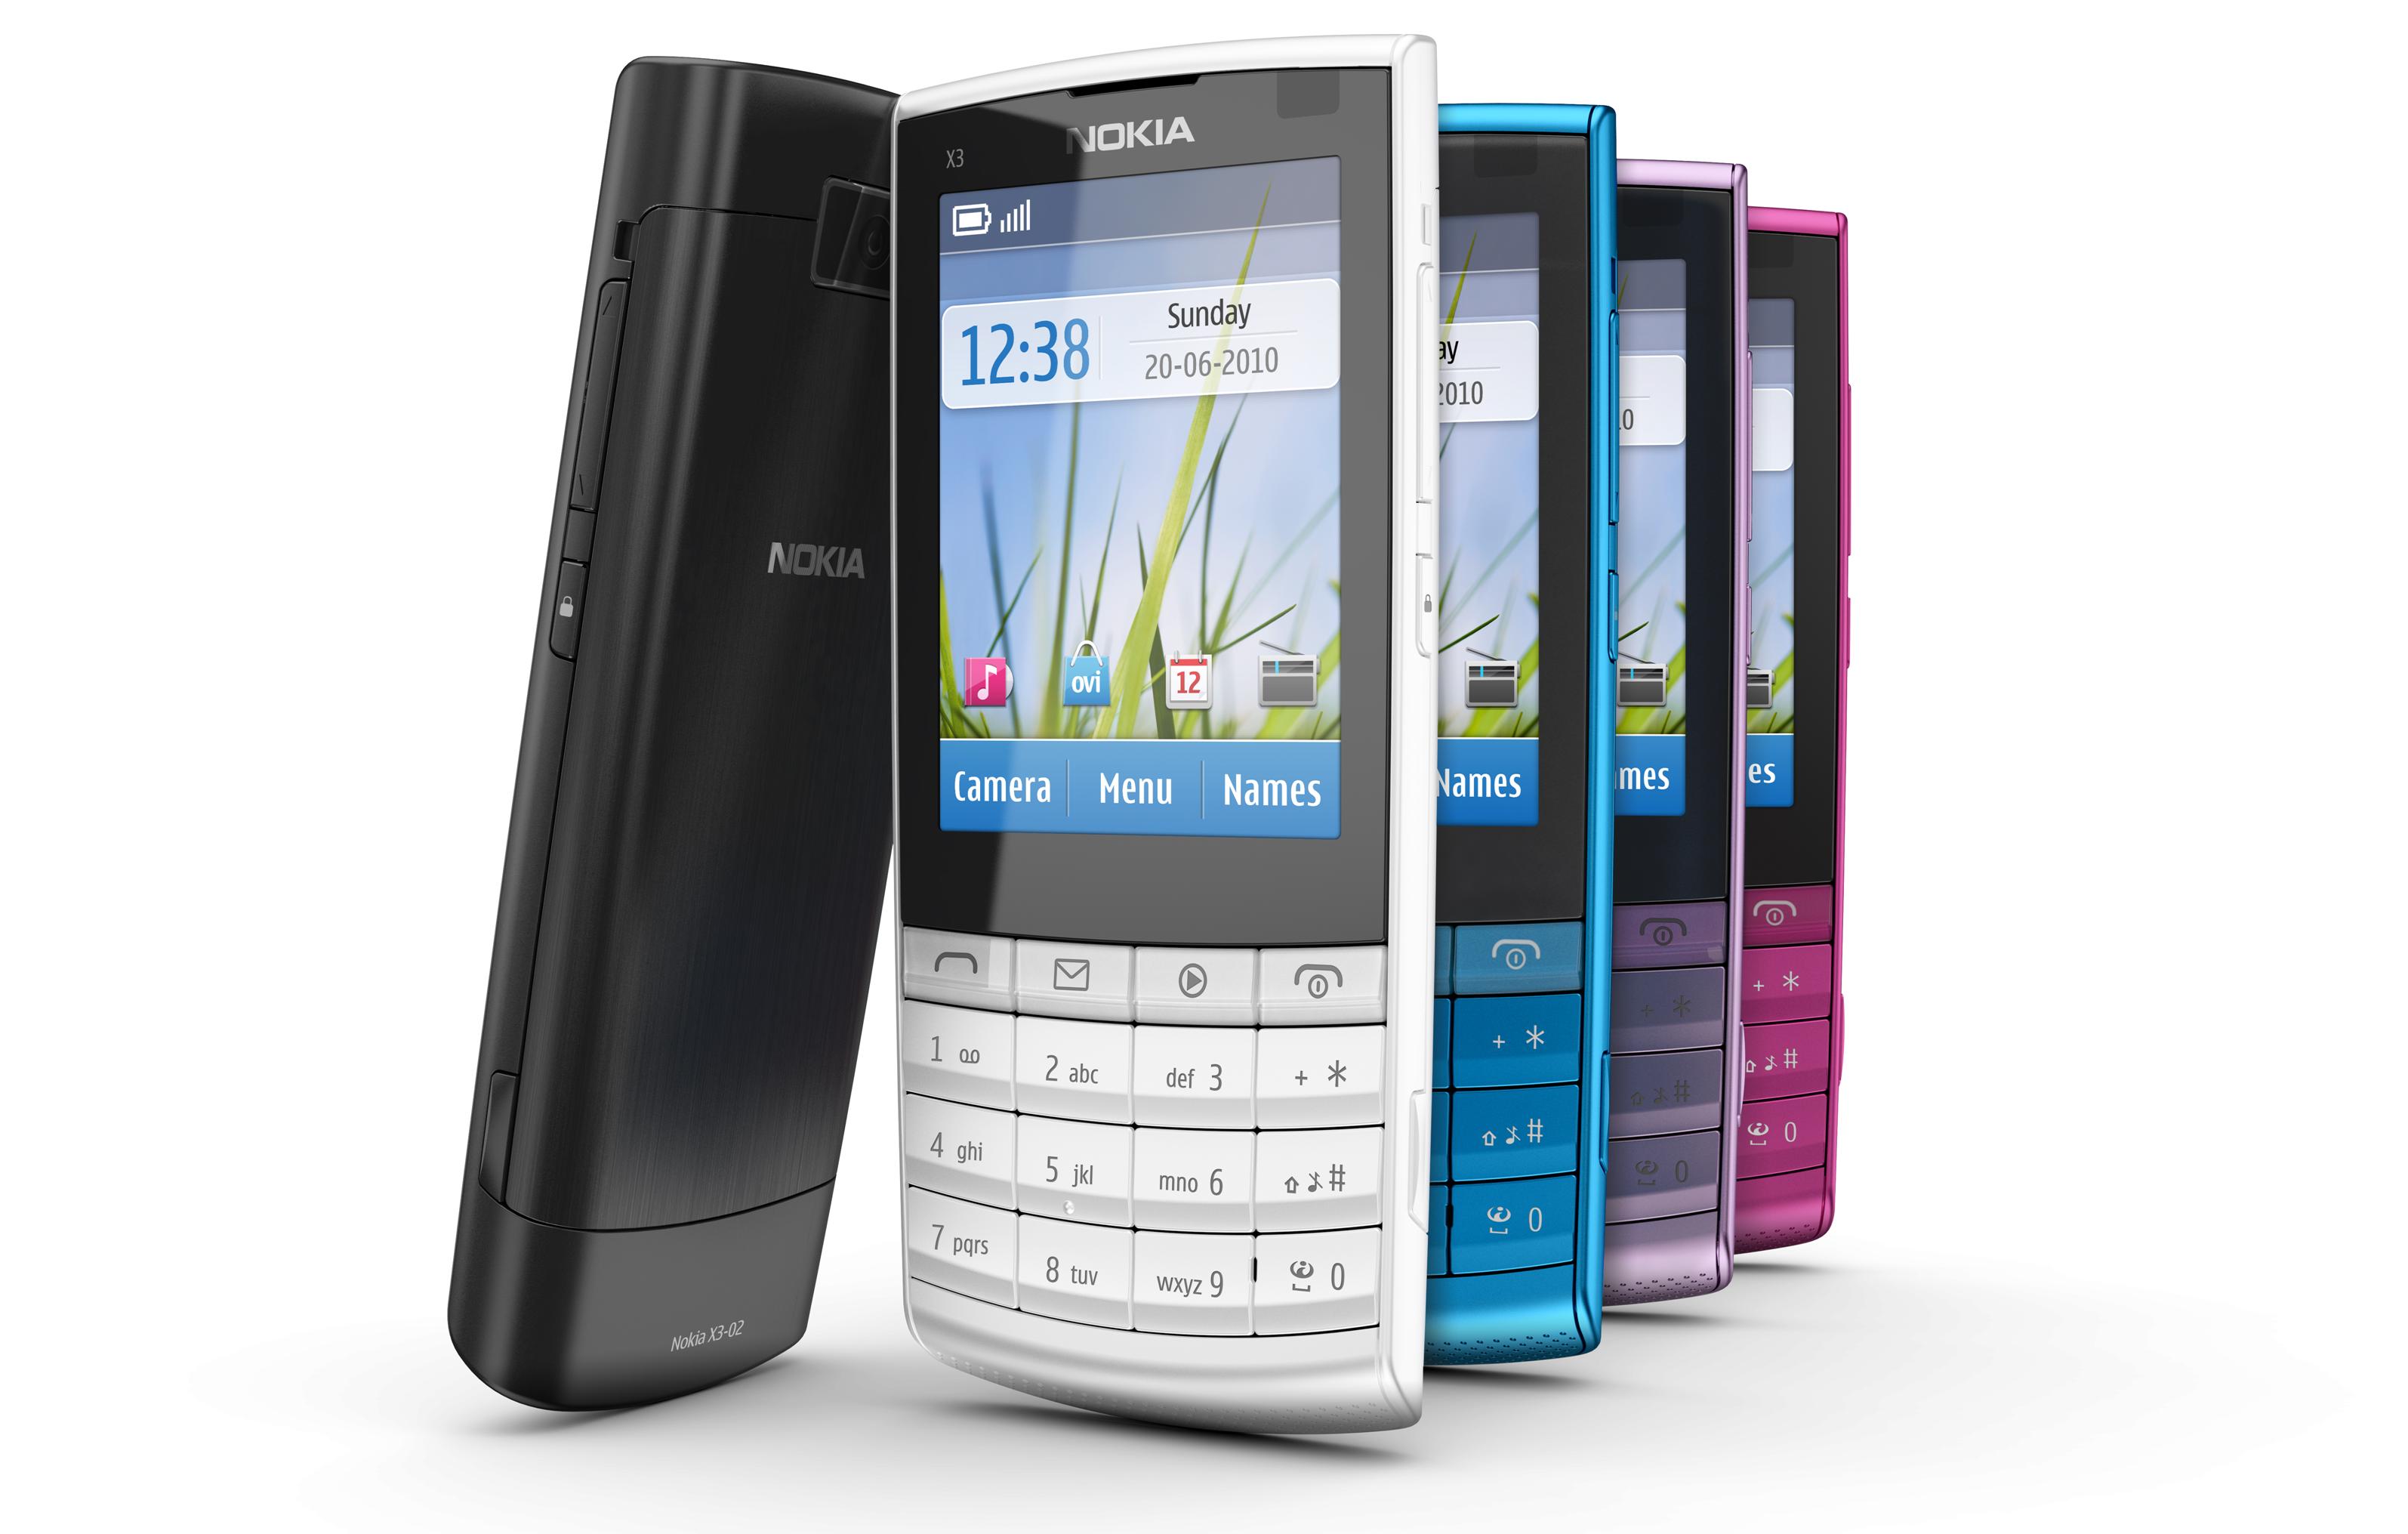 Best smartphones on Nokia and Samsung